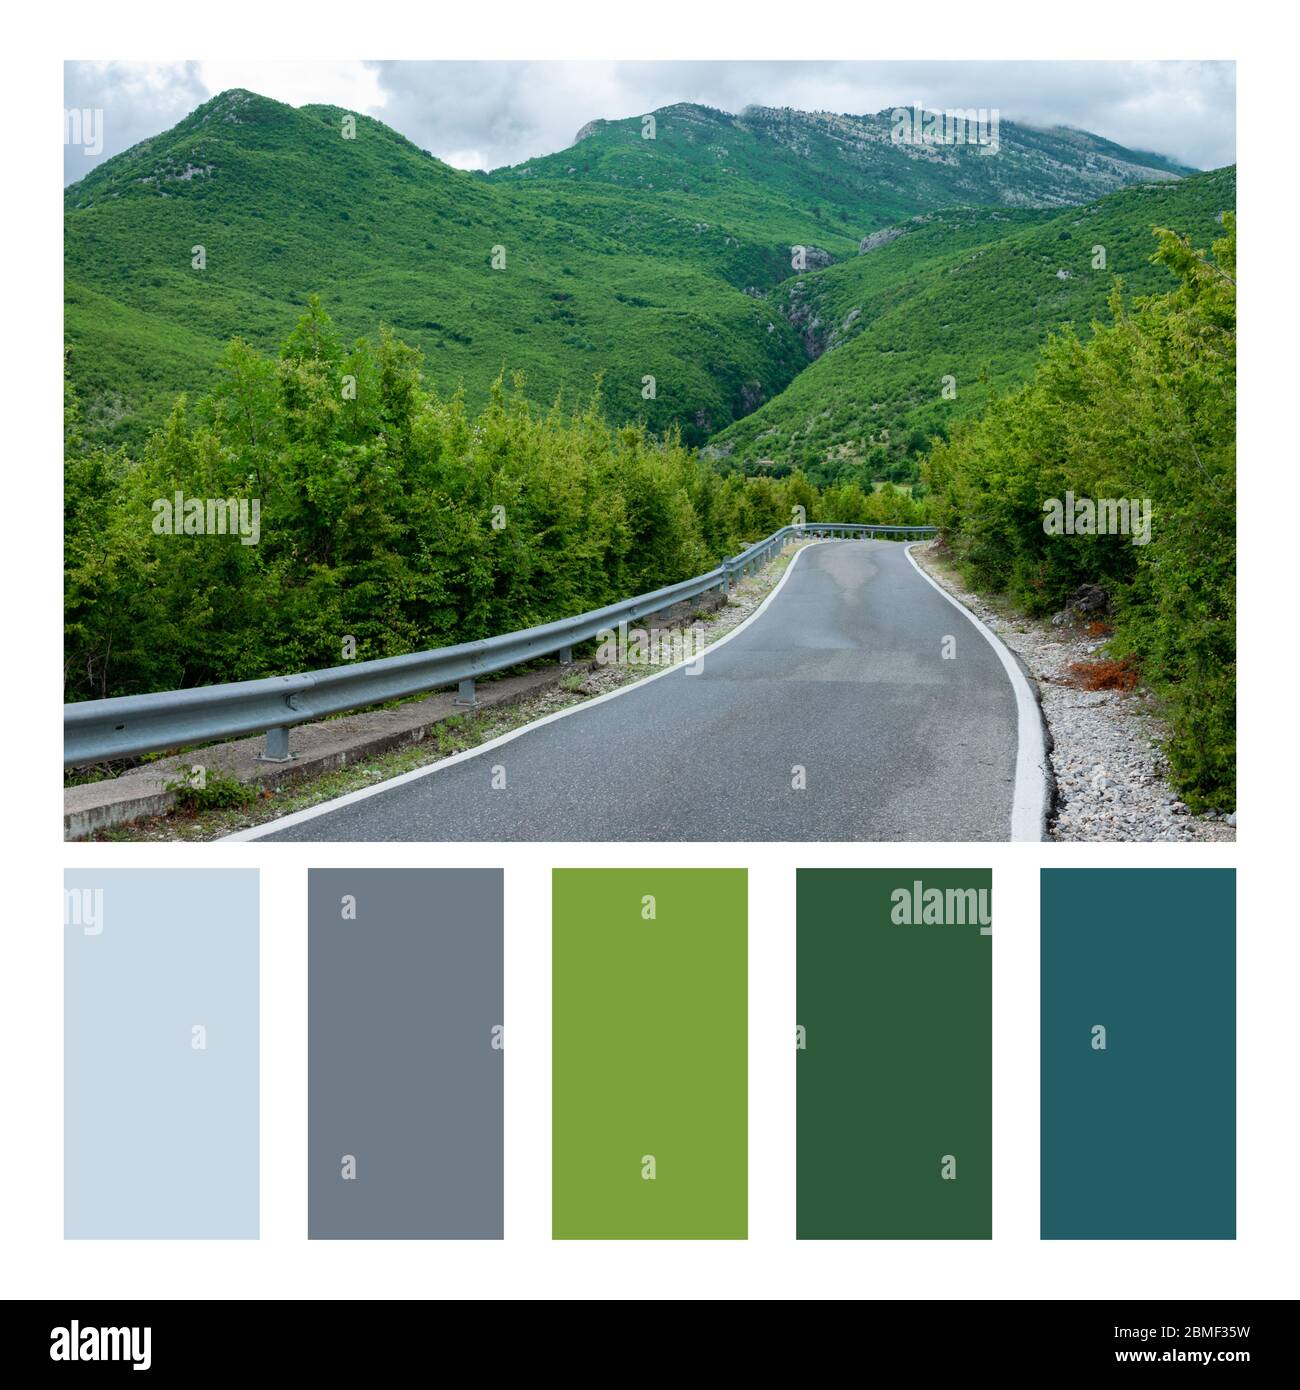 Albanische Naturlandschaft. Hohe Bergstraße in Farbpalette, mit kostenlosen Farbfeldern Stockfoto